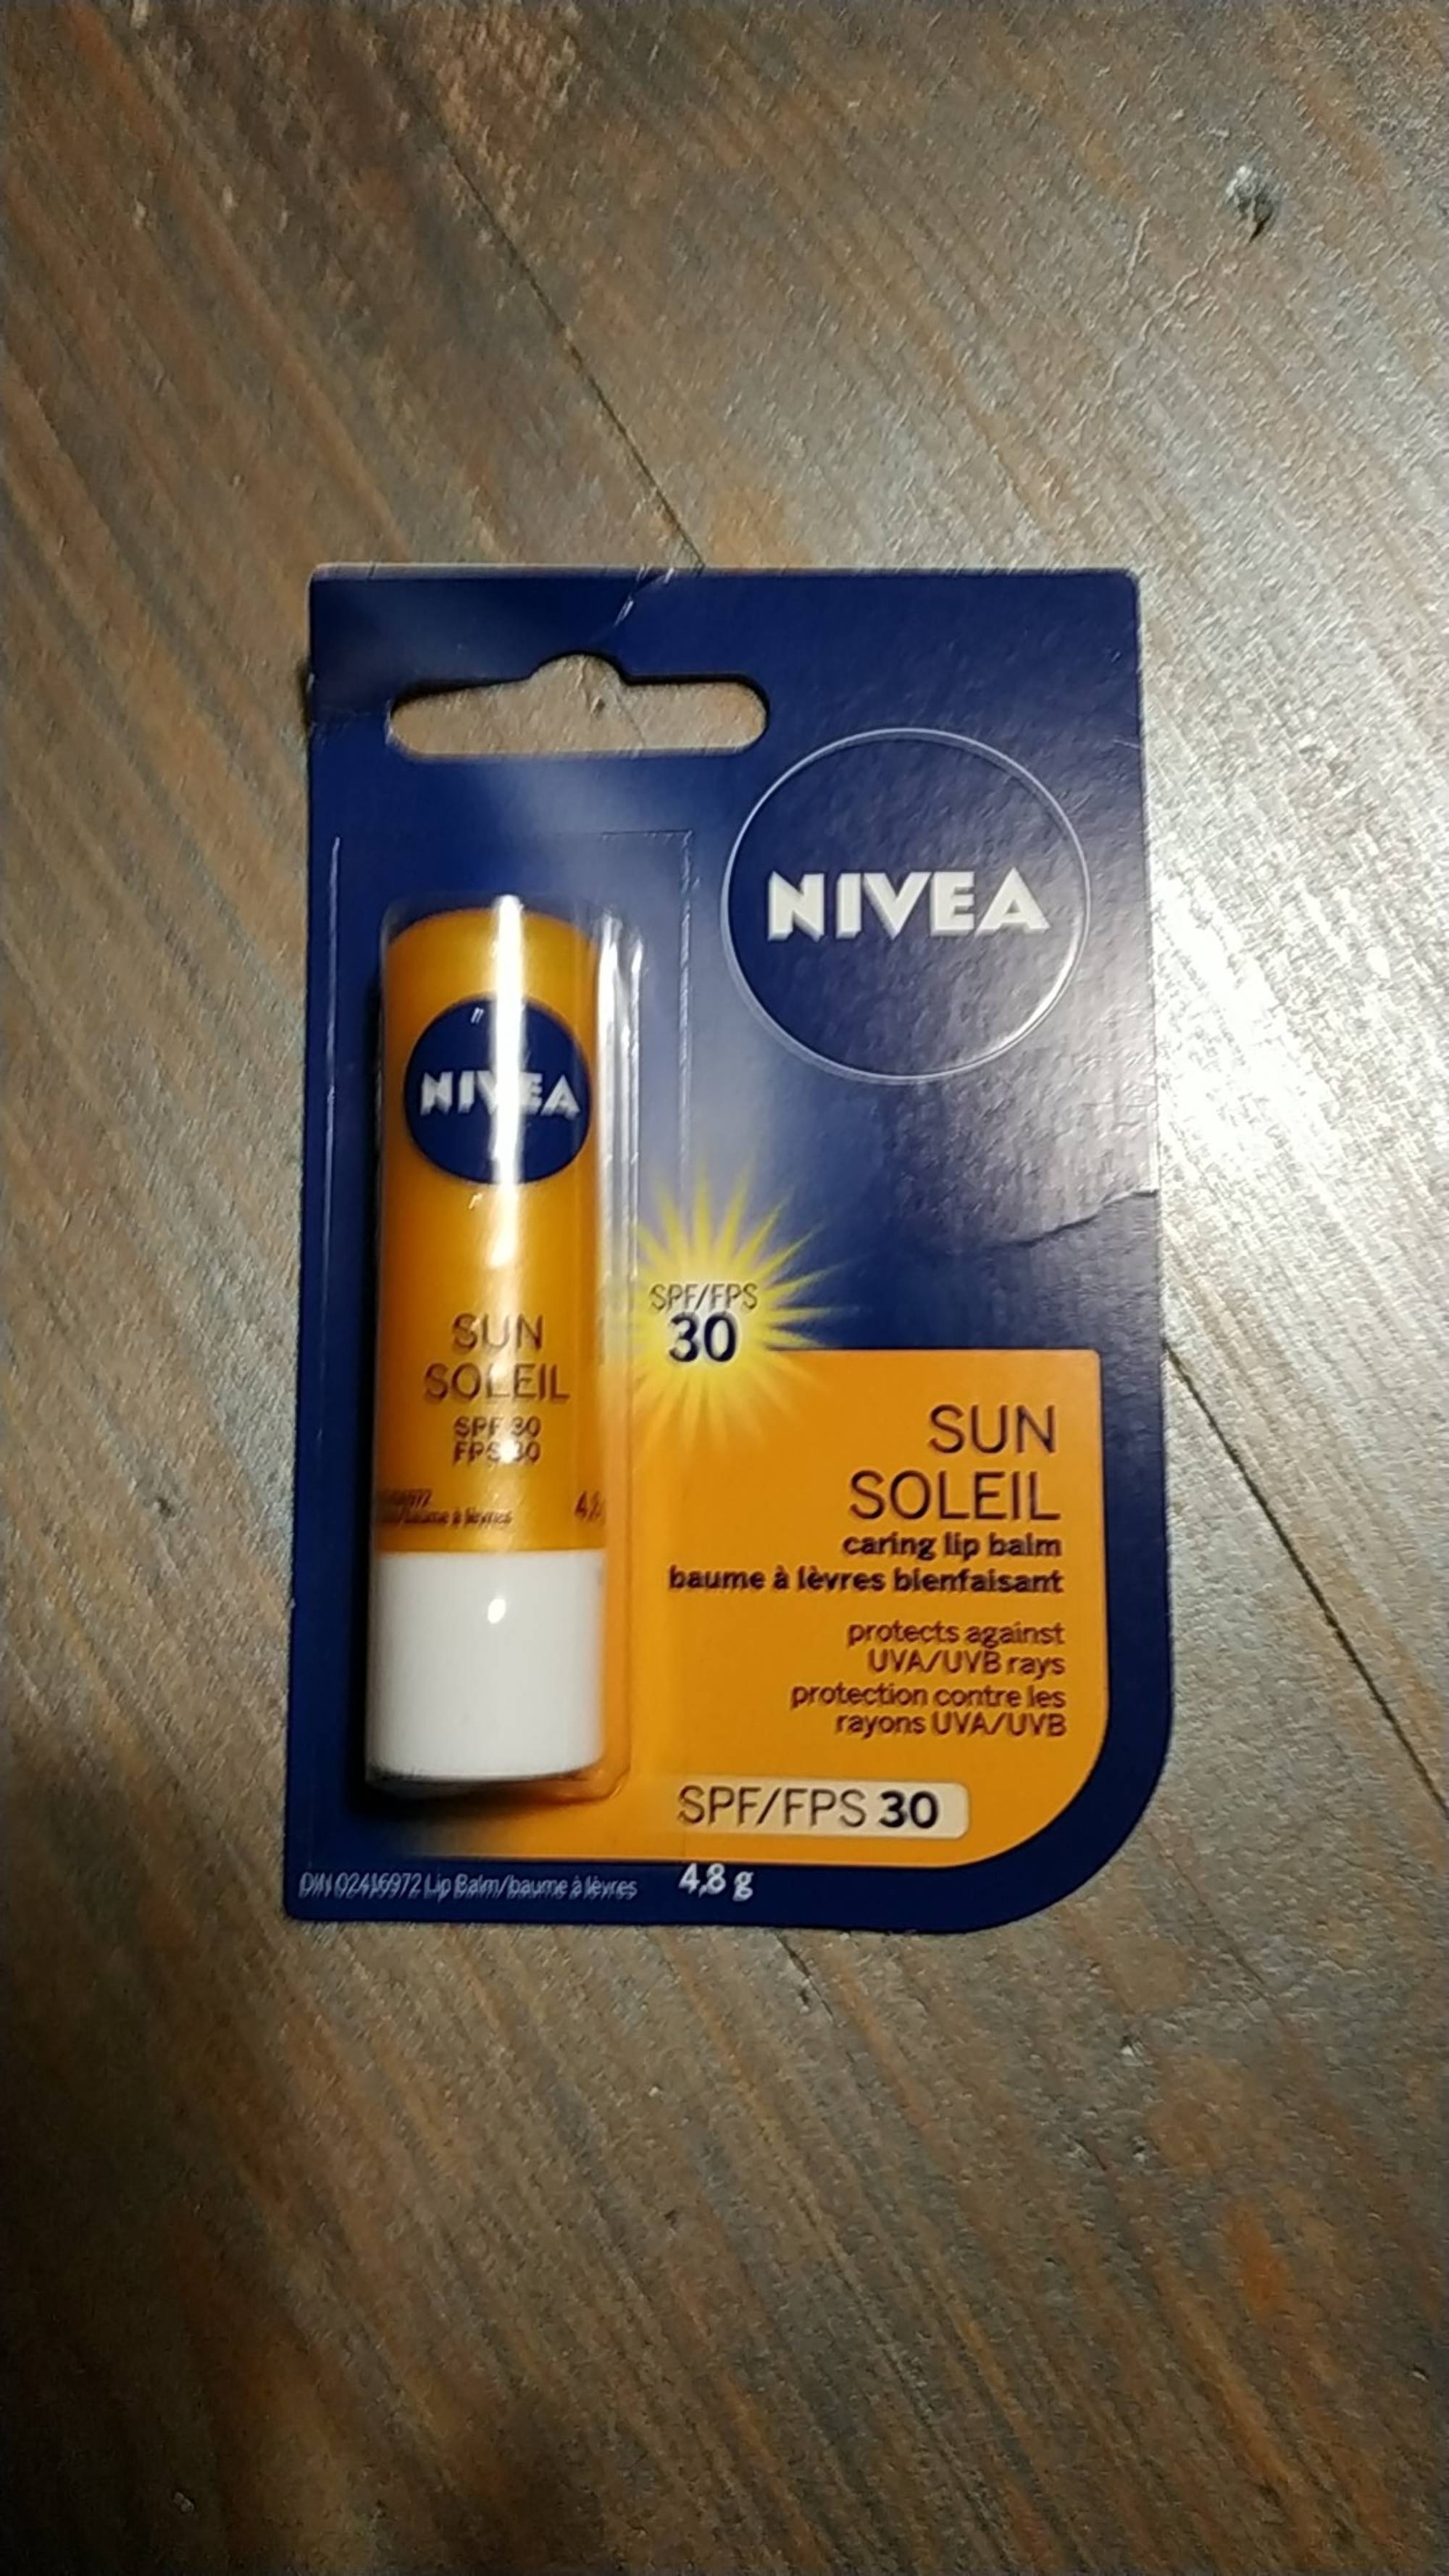 NIVEA - Soleil - Baume à lèvres bienfaisant SPF 30